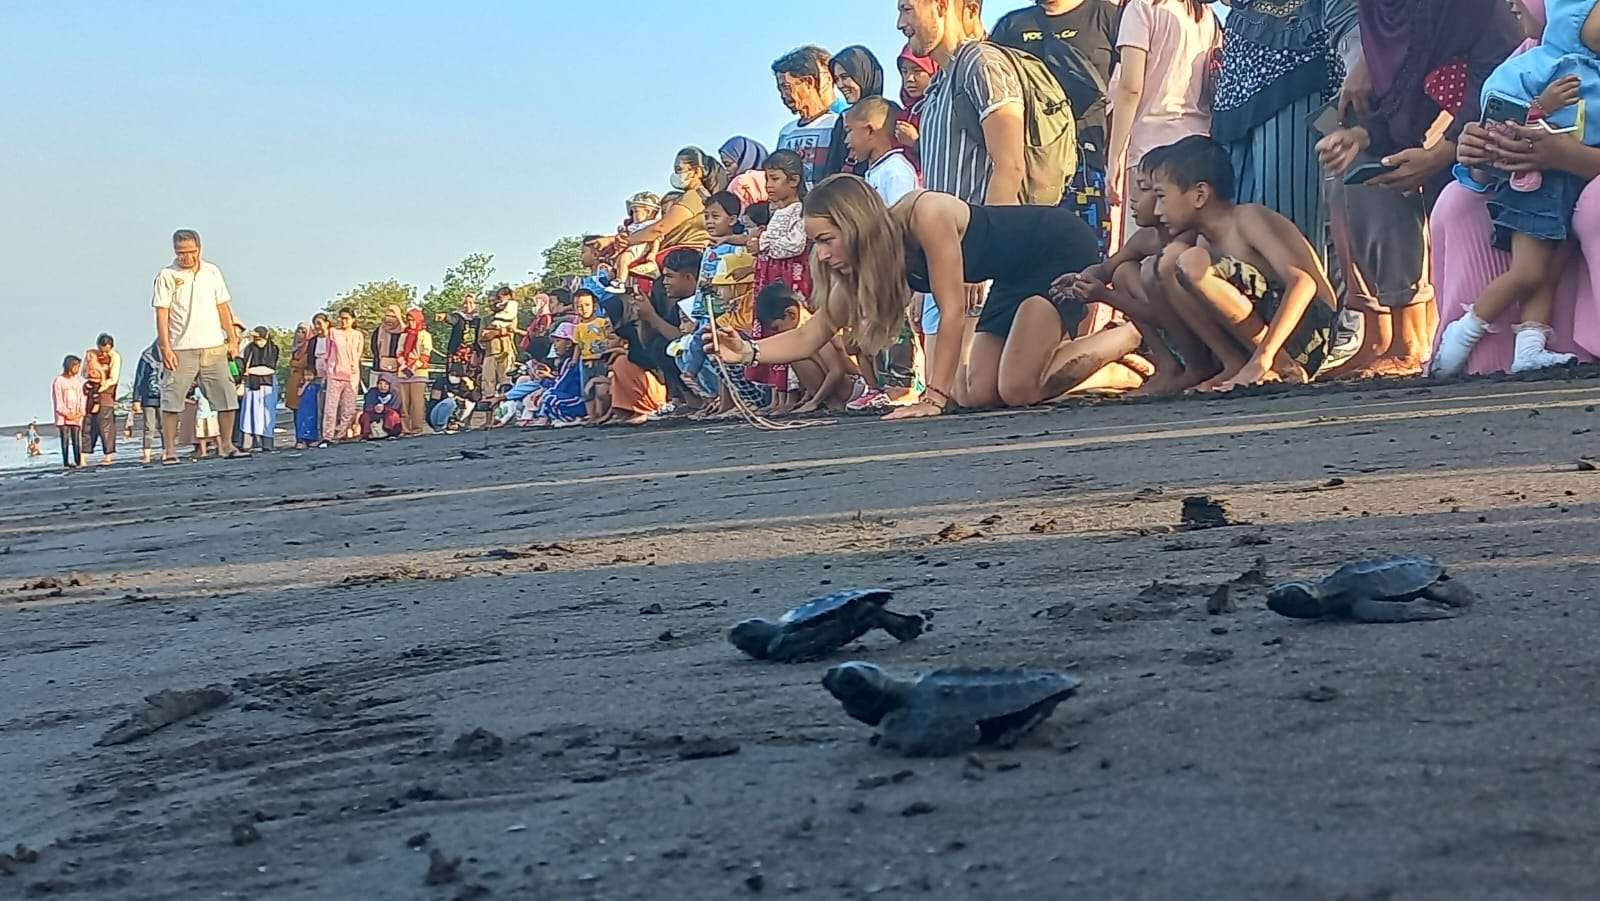 Puluhan tukik dilepasliarkan di kawasan pantai Pulau Santen (foto:istimewa)